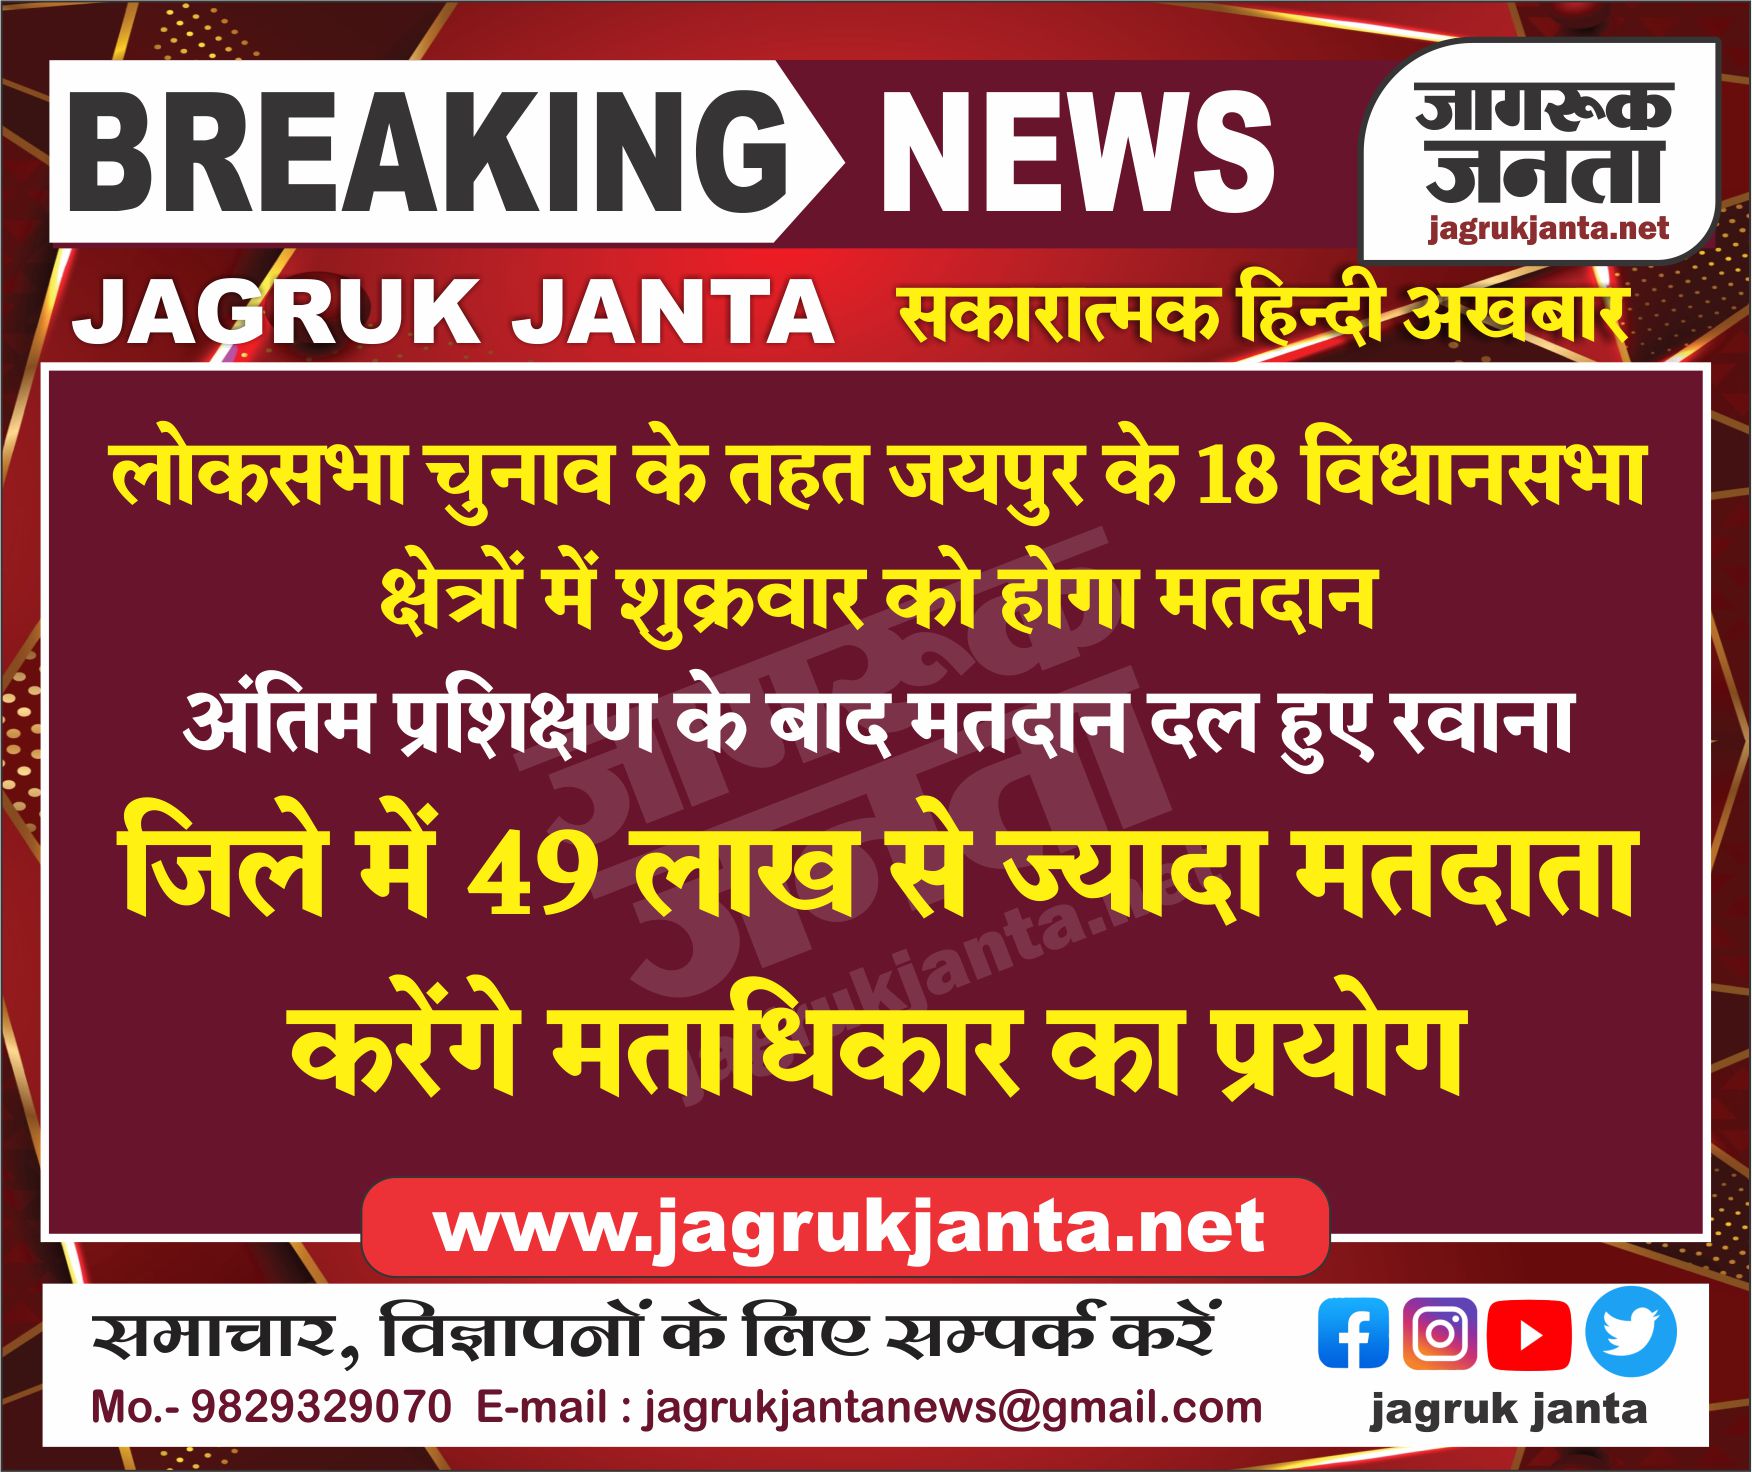 लोकसभा चुनाव के तहत जयपुर के 18 विधानसभा क्षेत्रों में शुक्रवार को होगा मतदान